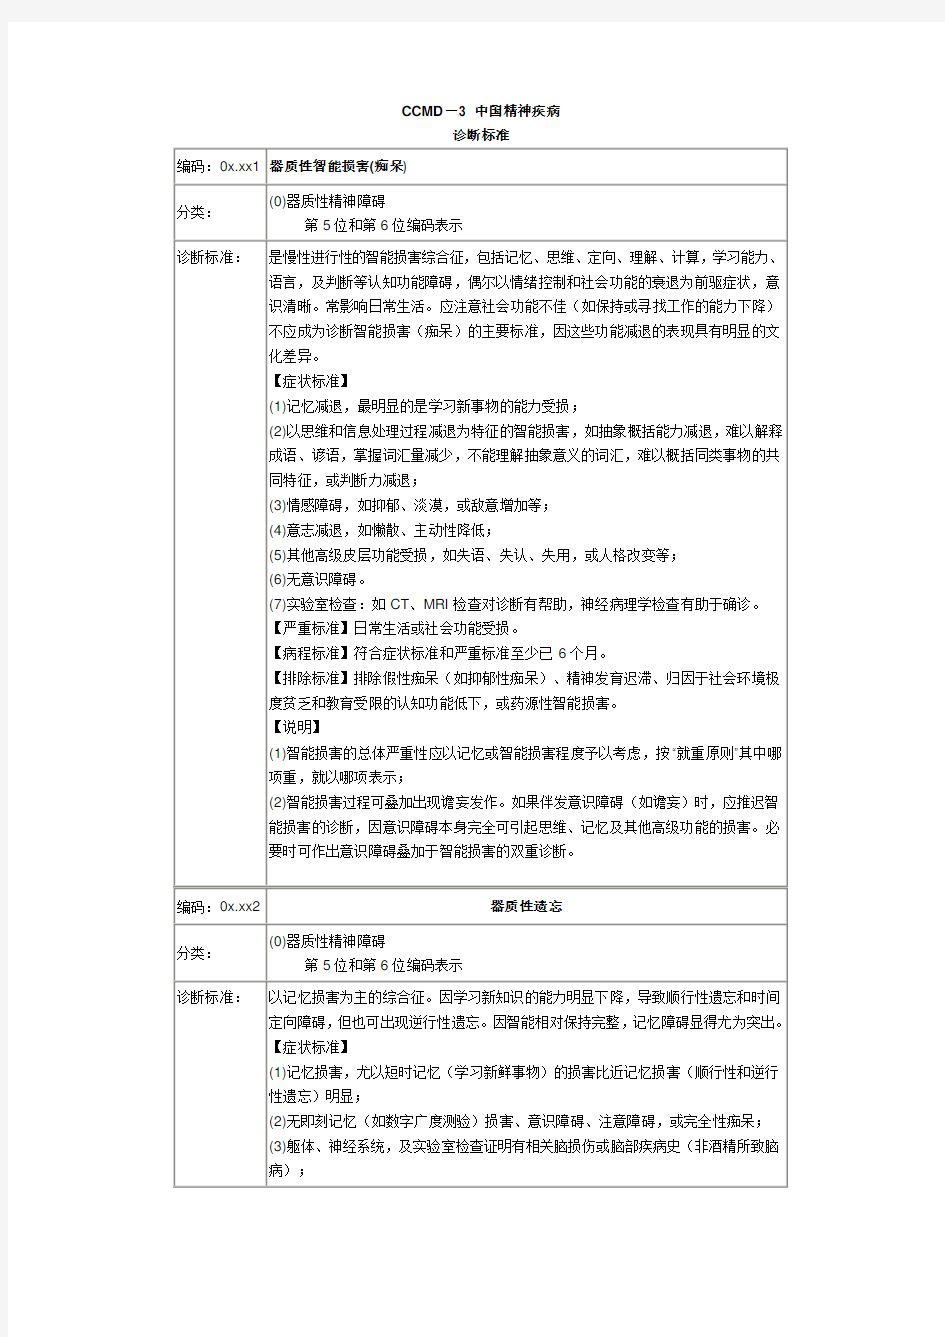 CCMD-3中国精神疾病诊断标准